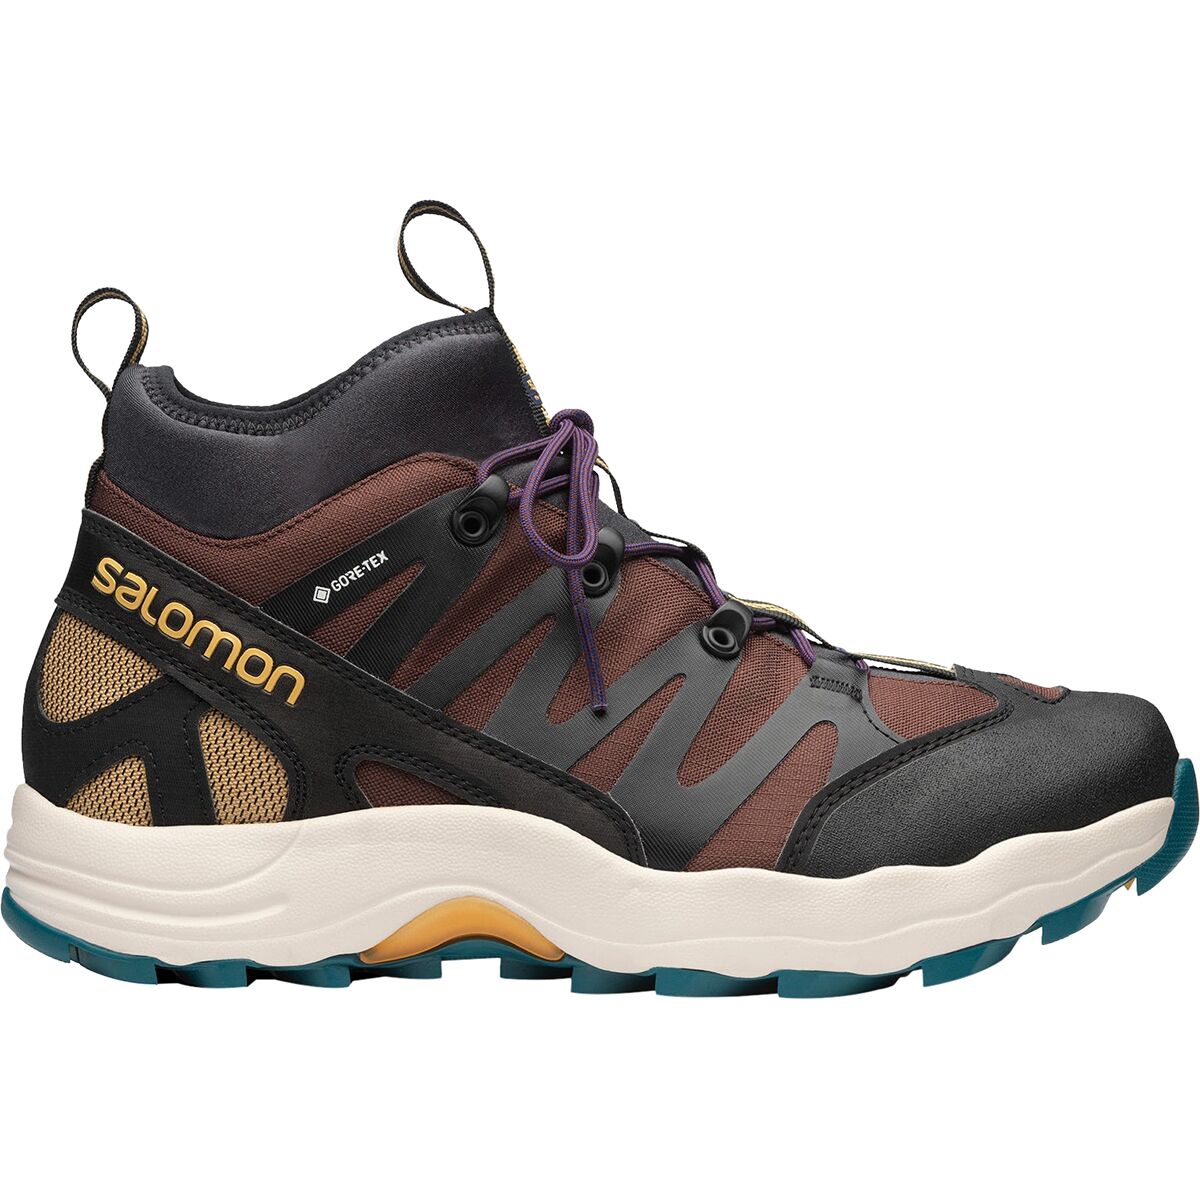 Salomon XA Pro Mid GTX Shoe Men's - Footwear